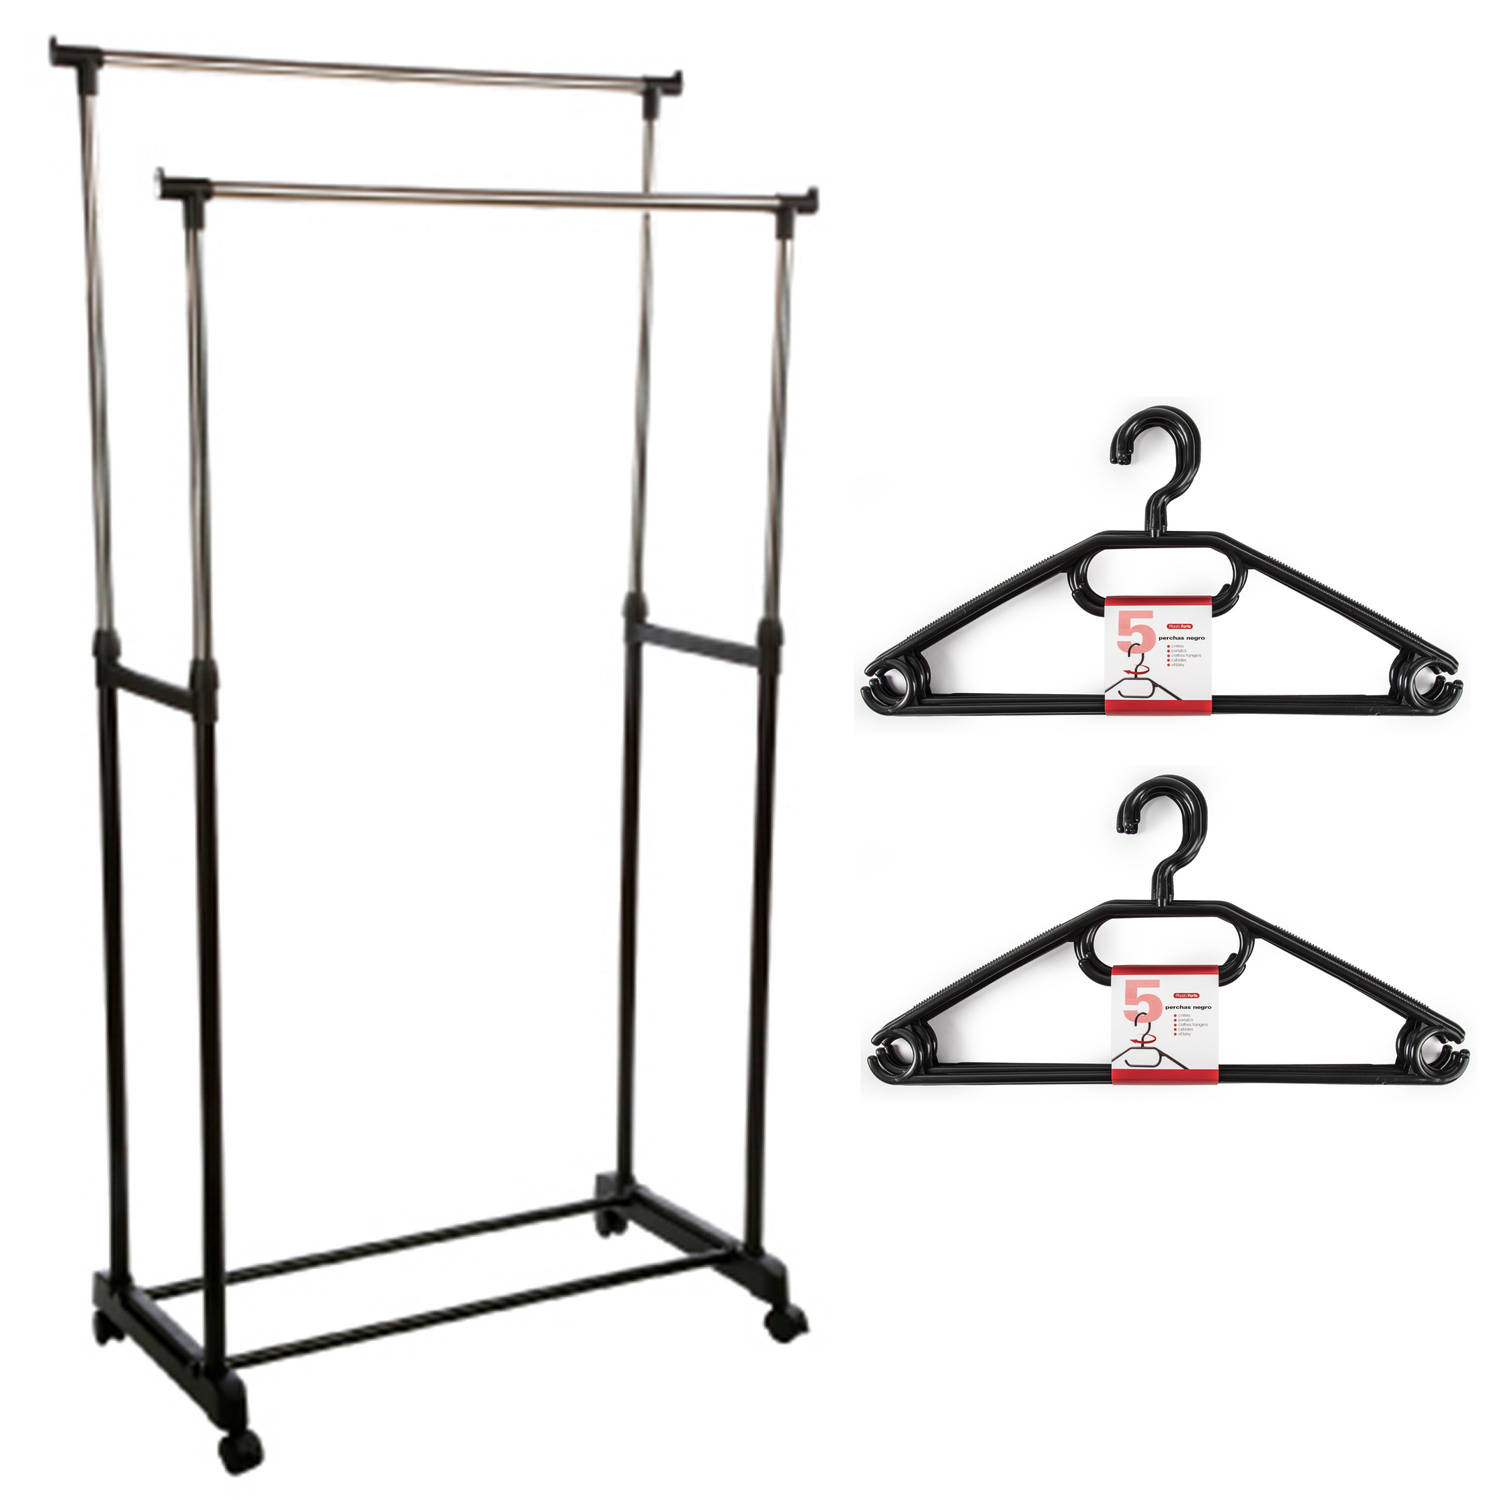 Kledingrek met kleding hangers dubbele stang kunststof zwart 80 x 42 x 170 cm Kledingrekken